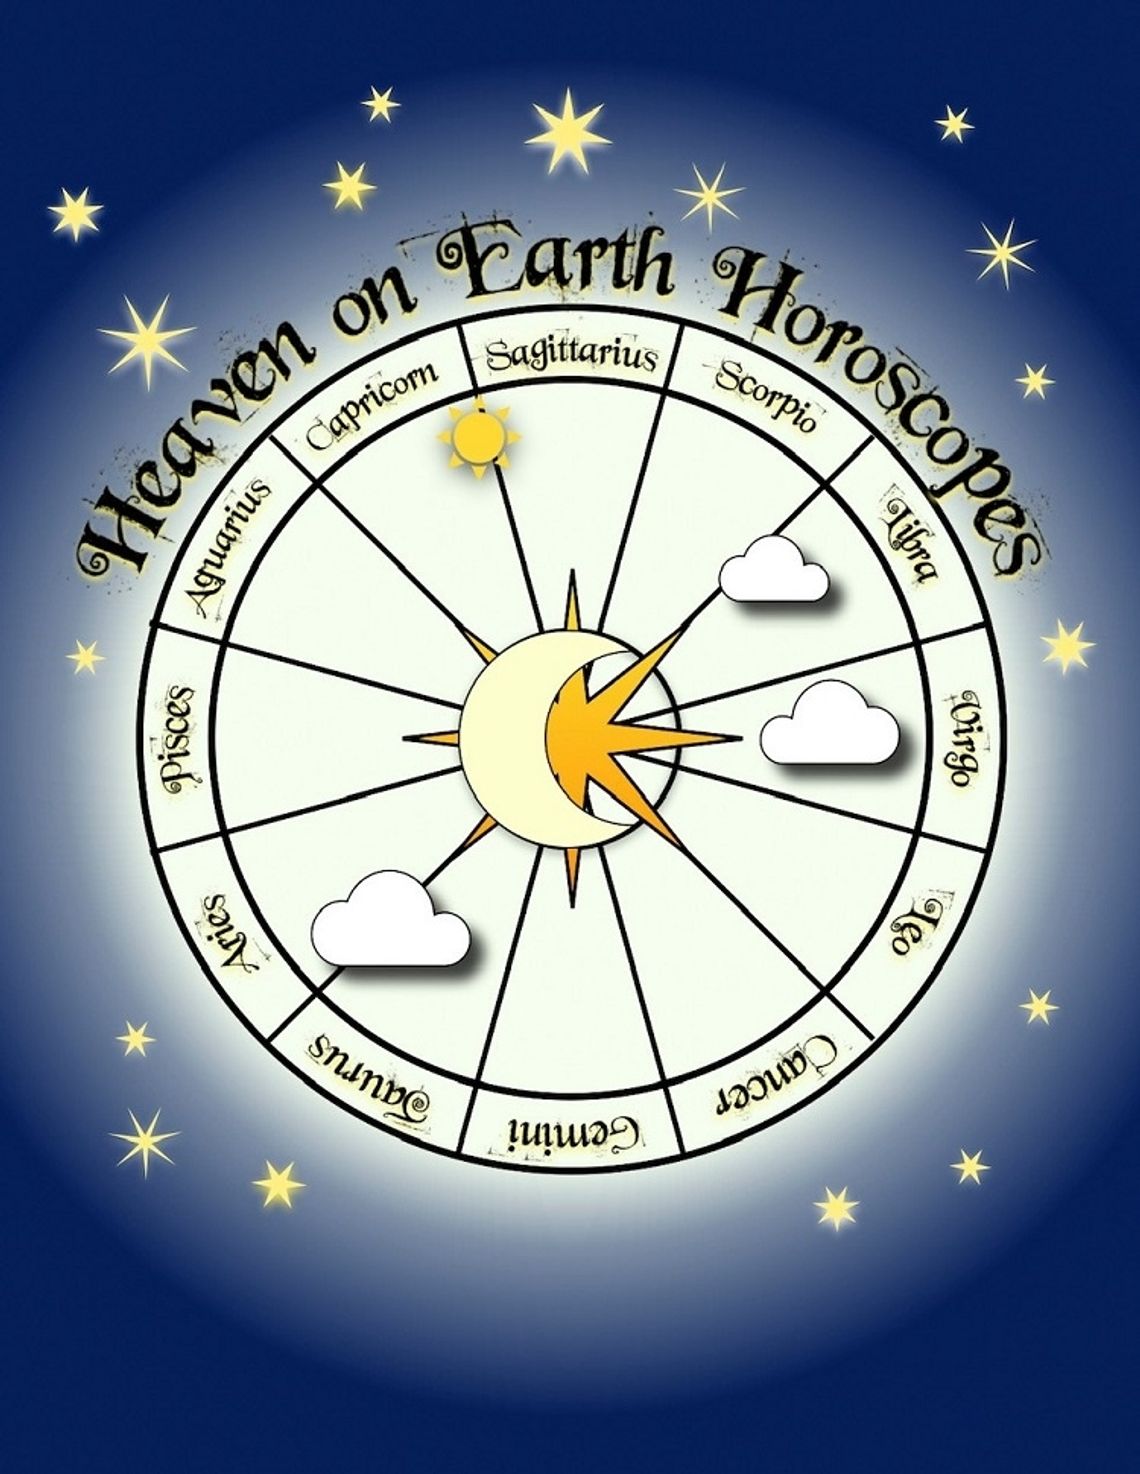 Heaven on Earth Horoscopes: January 6 - 12  Happy New Year! 